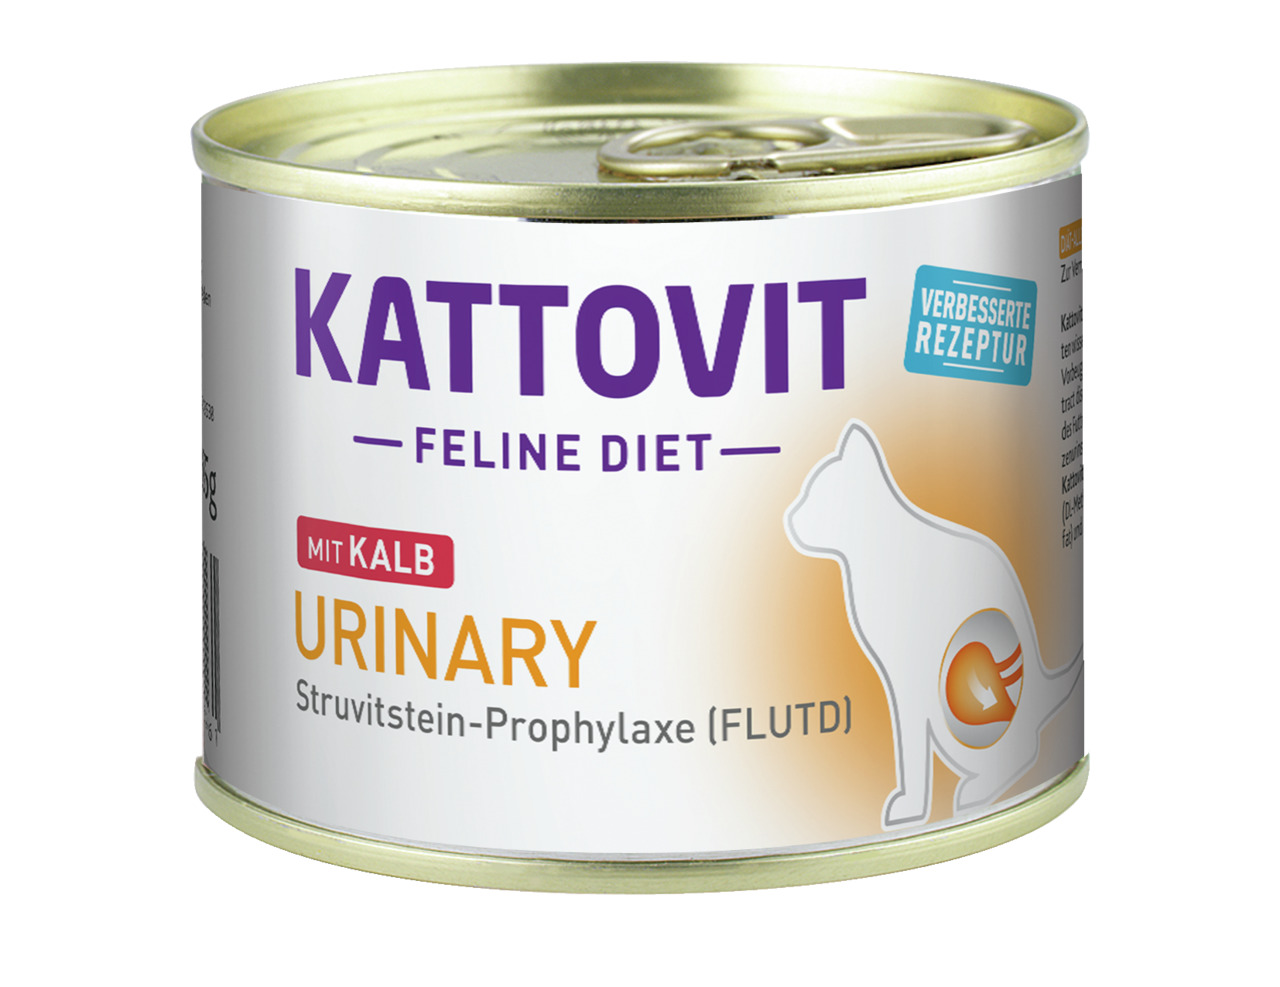 Sparpaket 24 x 185 g Kattovit Feline Diet Urinary mit Kalb Katzen Nassfutter